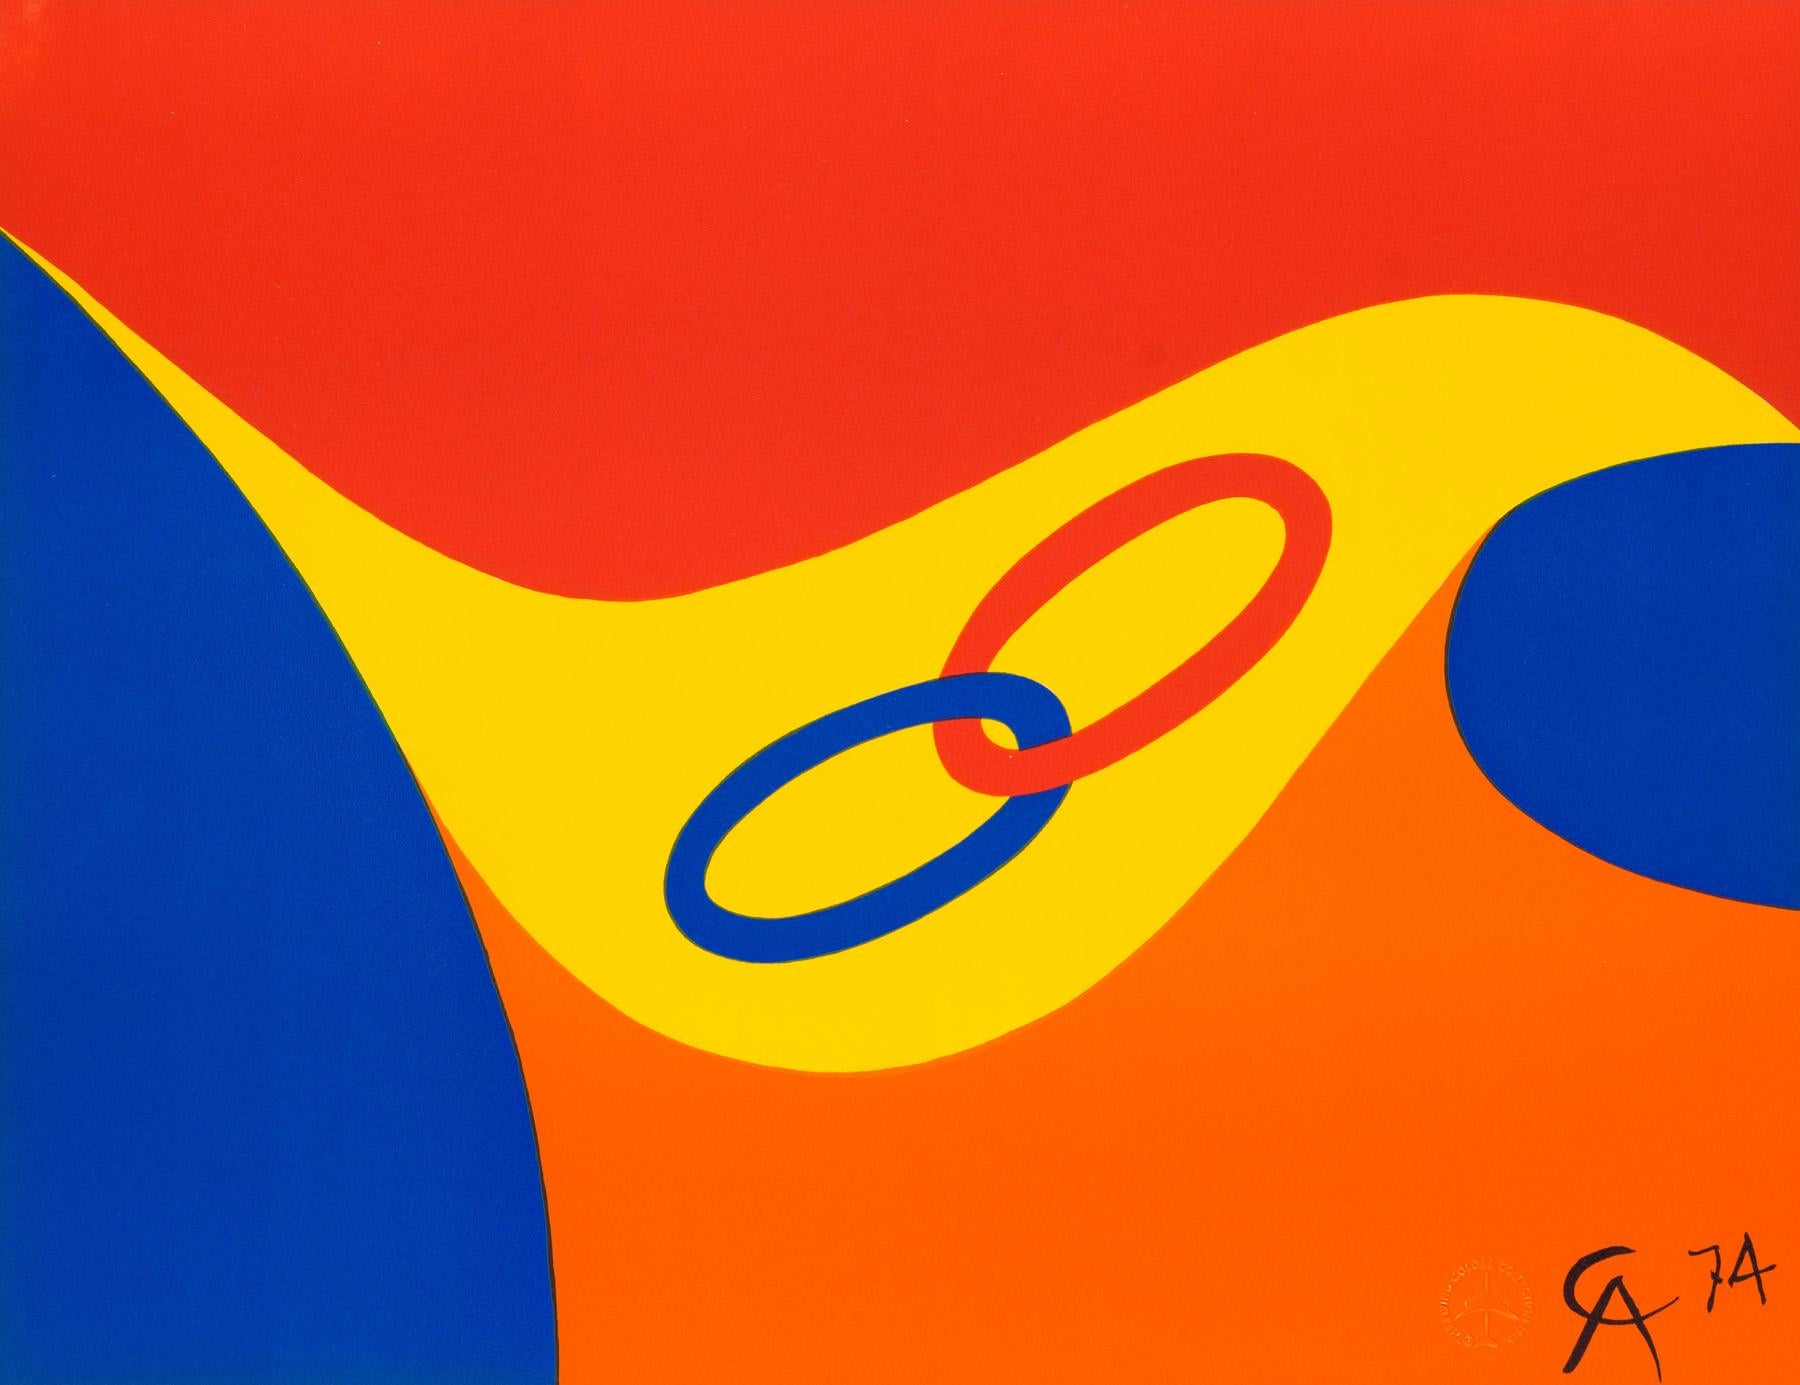 Alexander Calder Abstract Print - Friendship